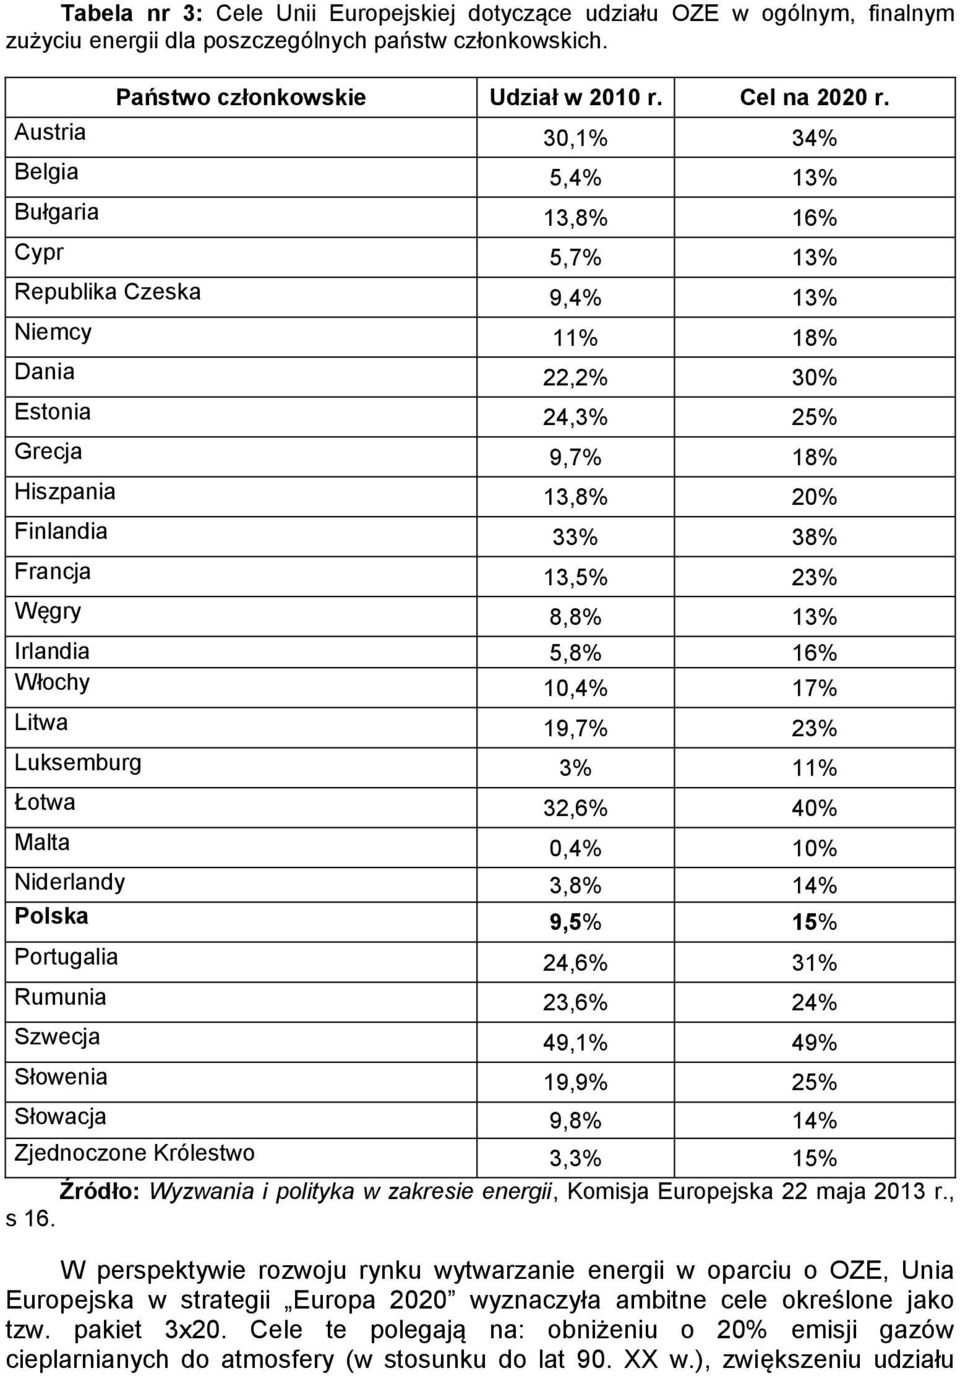 Francja 13,5% 23% Węgry 8,8% 13% Irlandia 5,8% 16% Włochy 10,4% 17% Litwa 19,7% 23% Luksemburg 3% 11% Łotwa 32,6% 40% Malta 0,4% 10% Niderlandy 3,8% 14% Polska 9,5% 15% Portugalia 24,6% 31% Rumunia